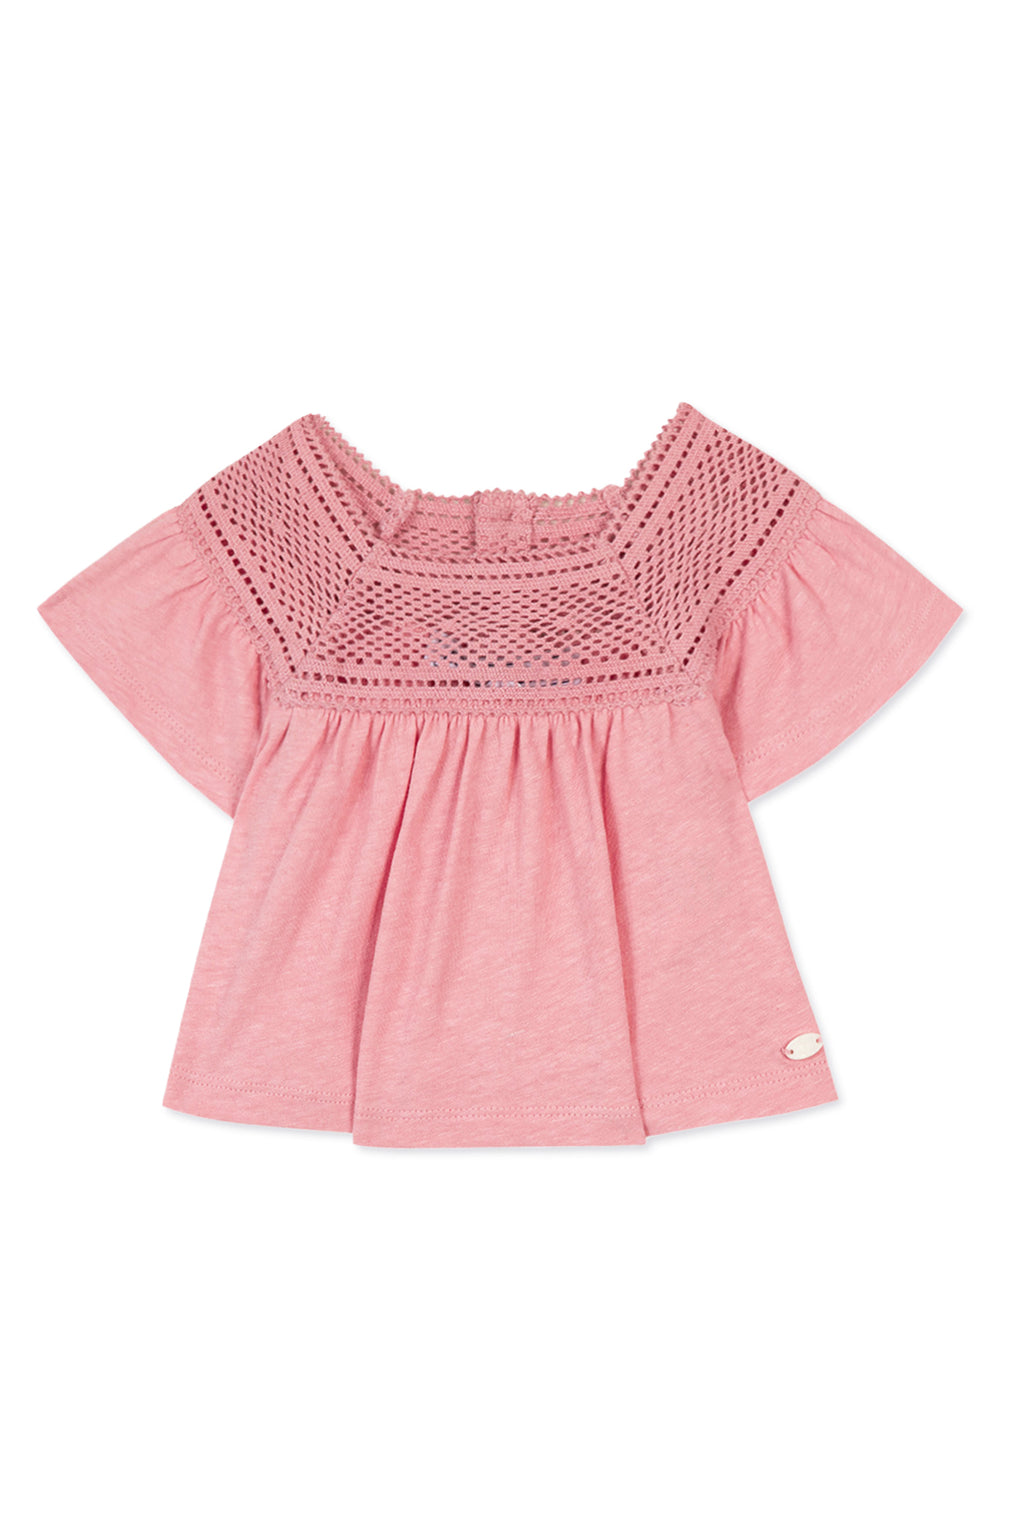 T-shirt - Pink cotton hook